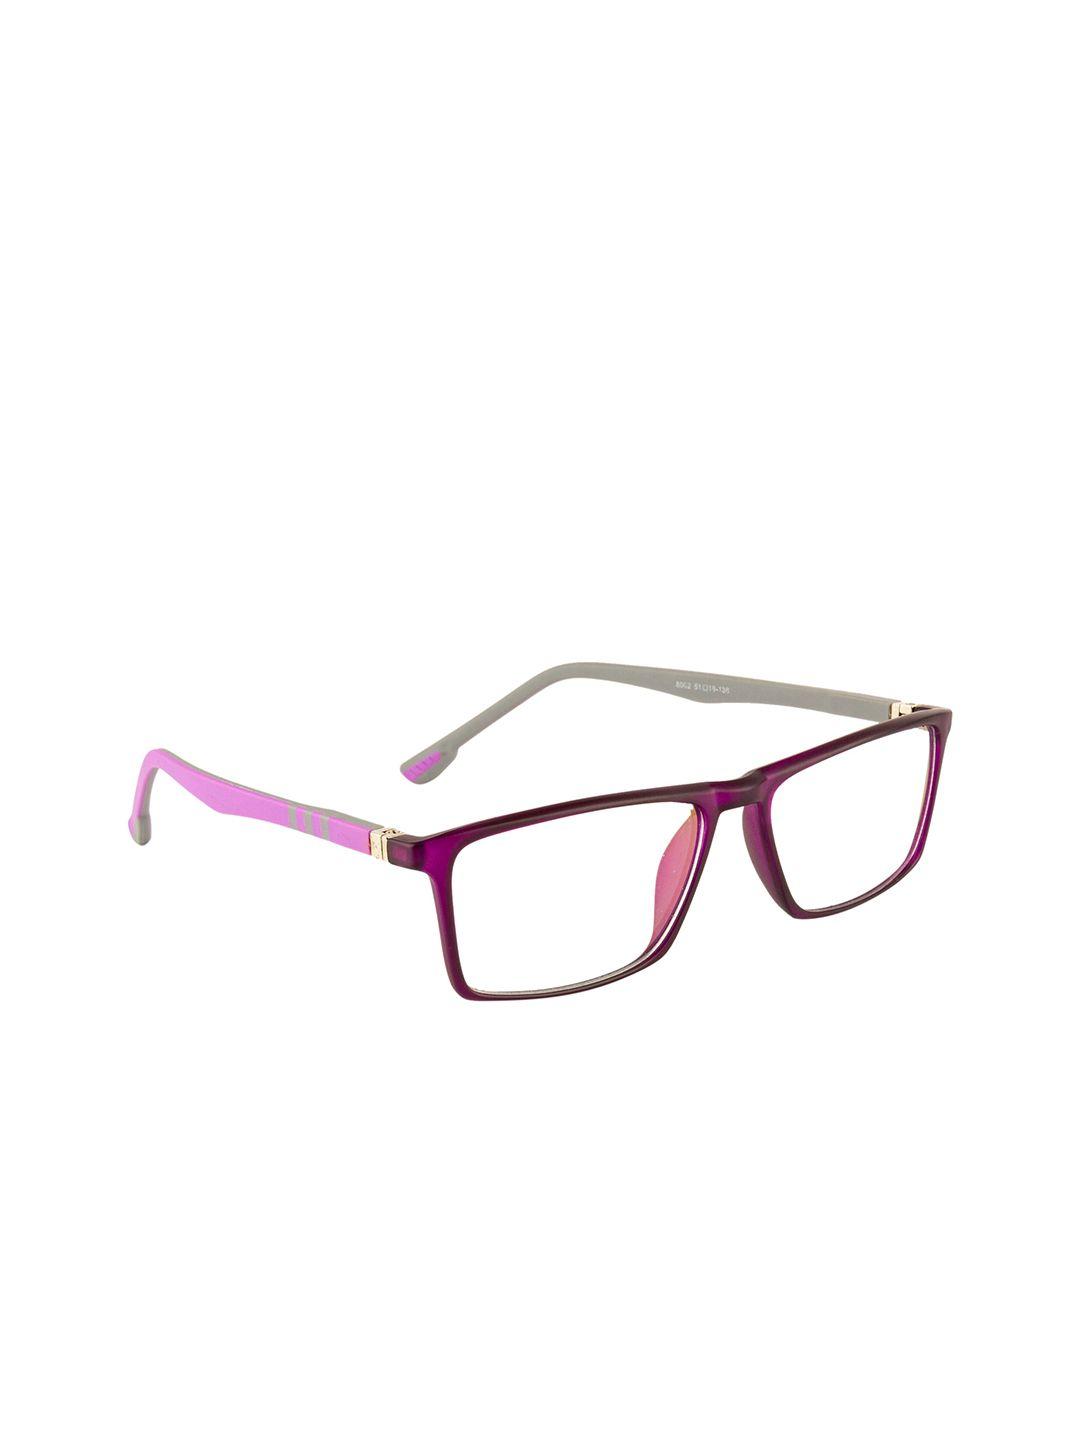 gold berg unisex purple & pink colourblocked full rim wayfarer frames eyeglasses